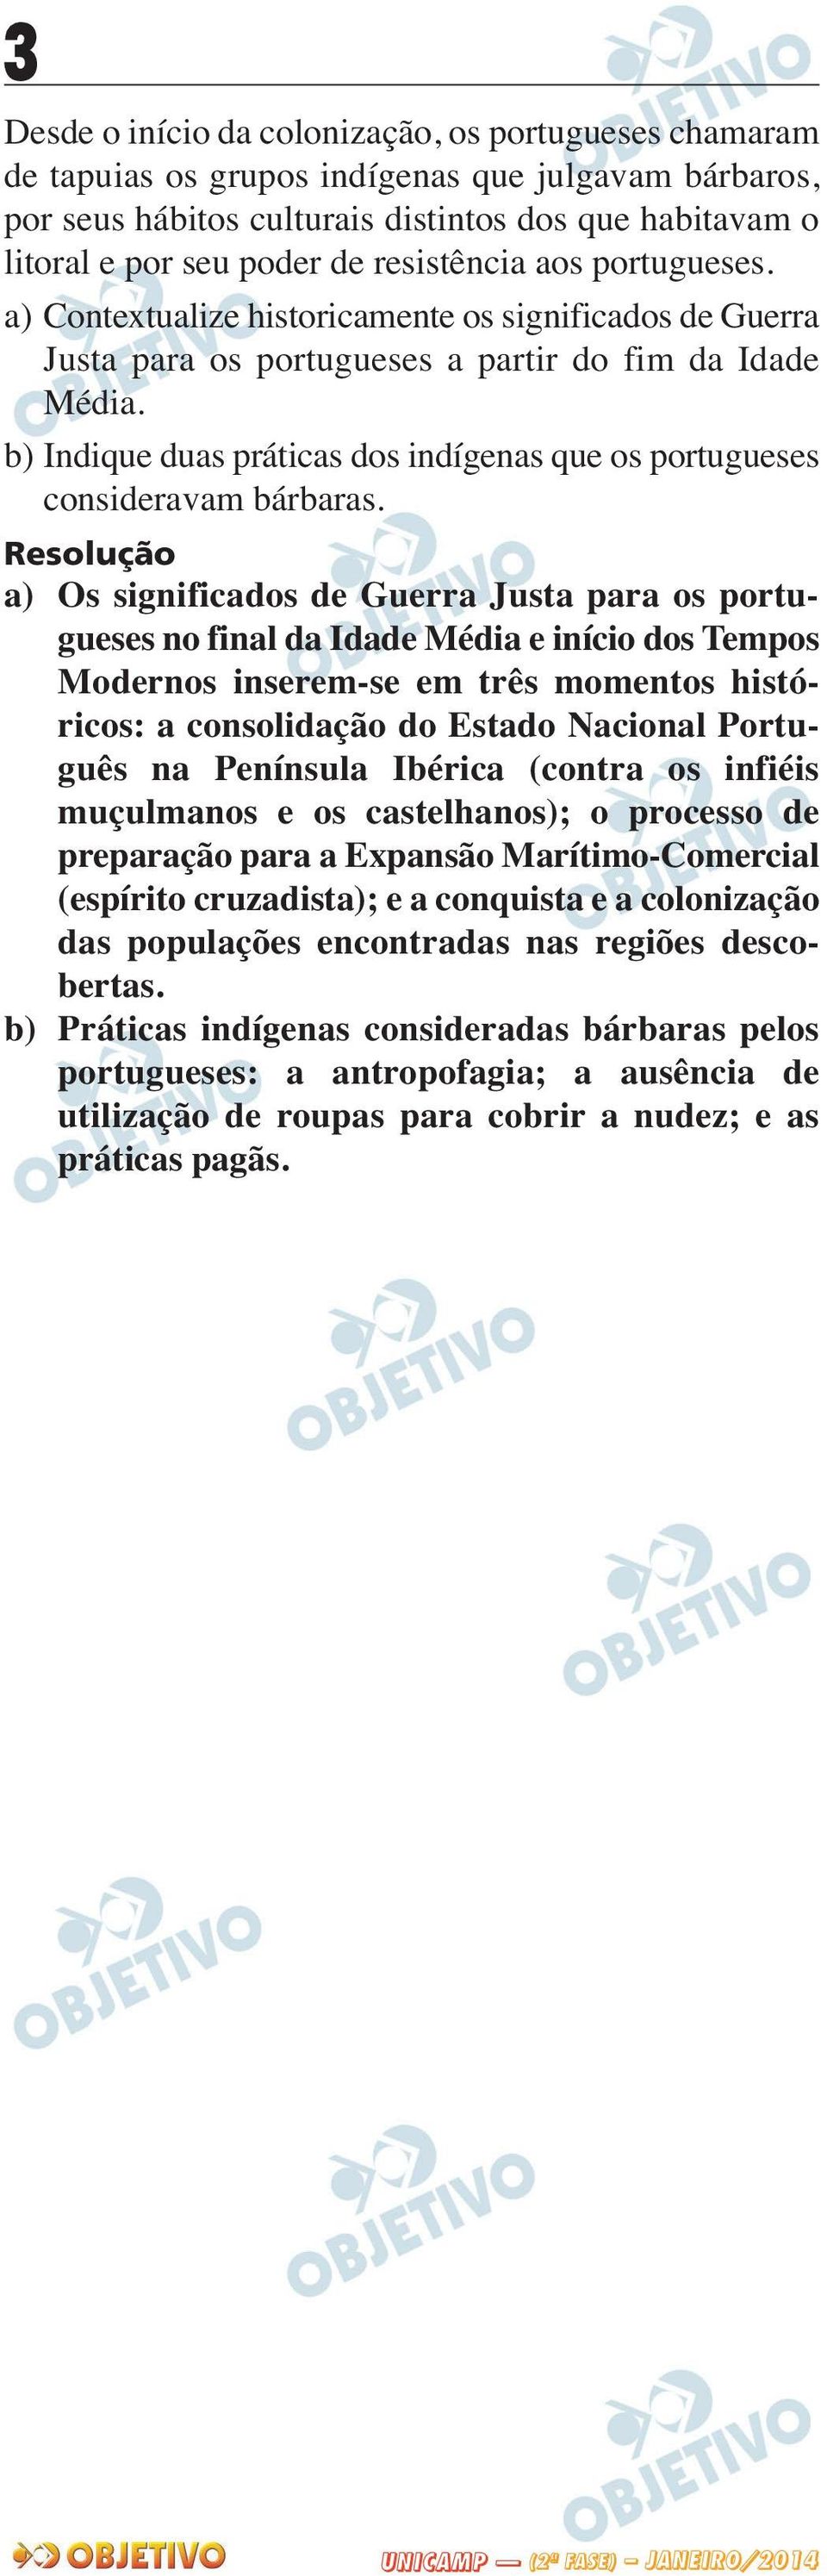 b) Indique duas práticas dos indígenas que os portugueses consideravam bárbaras.